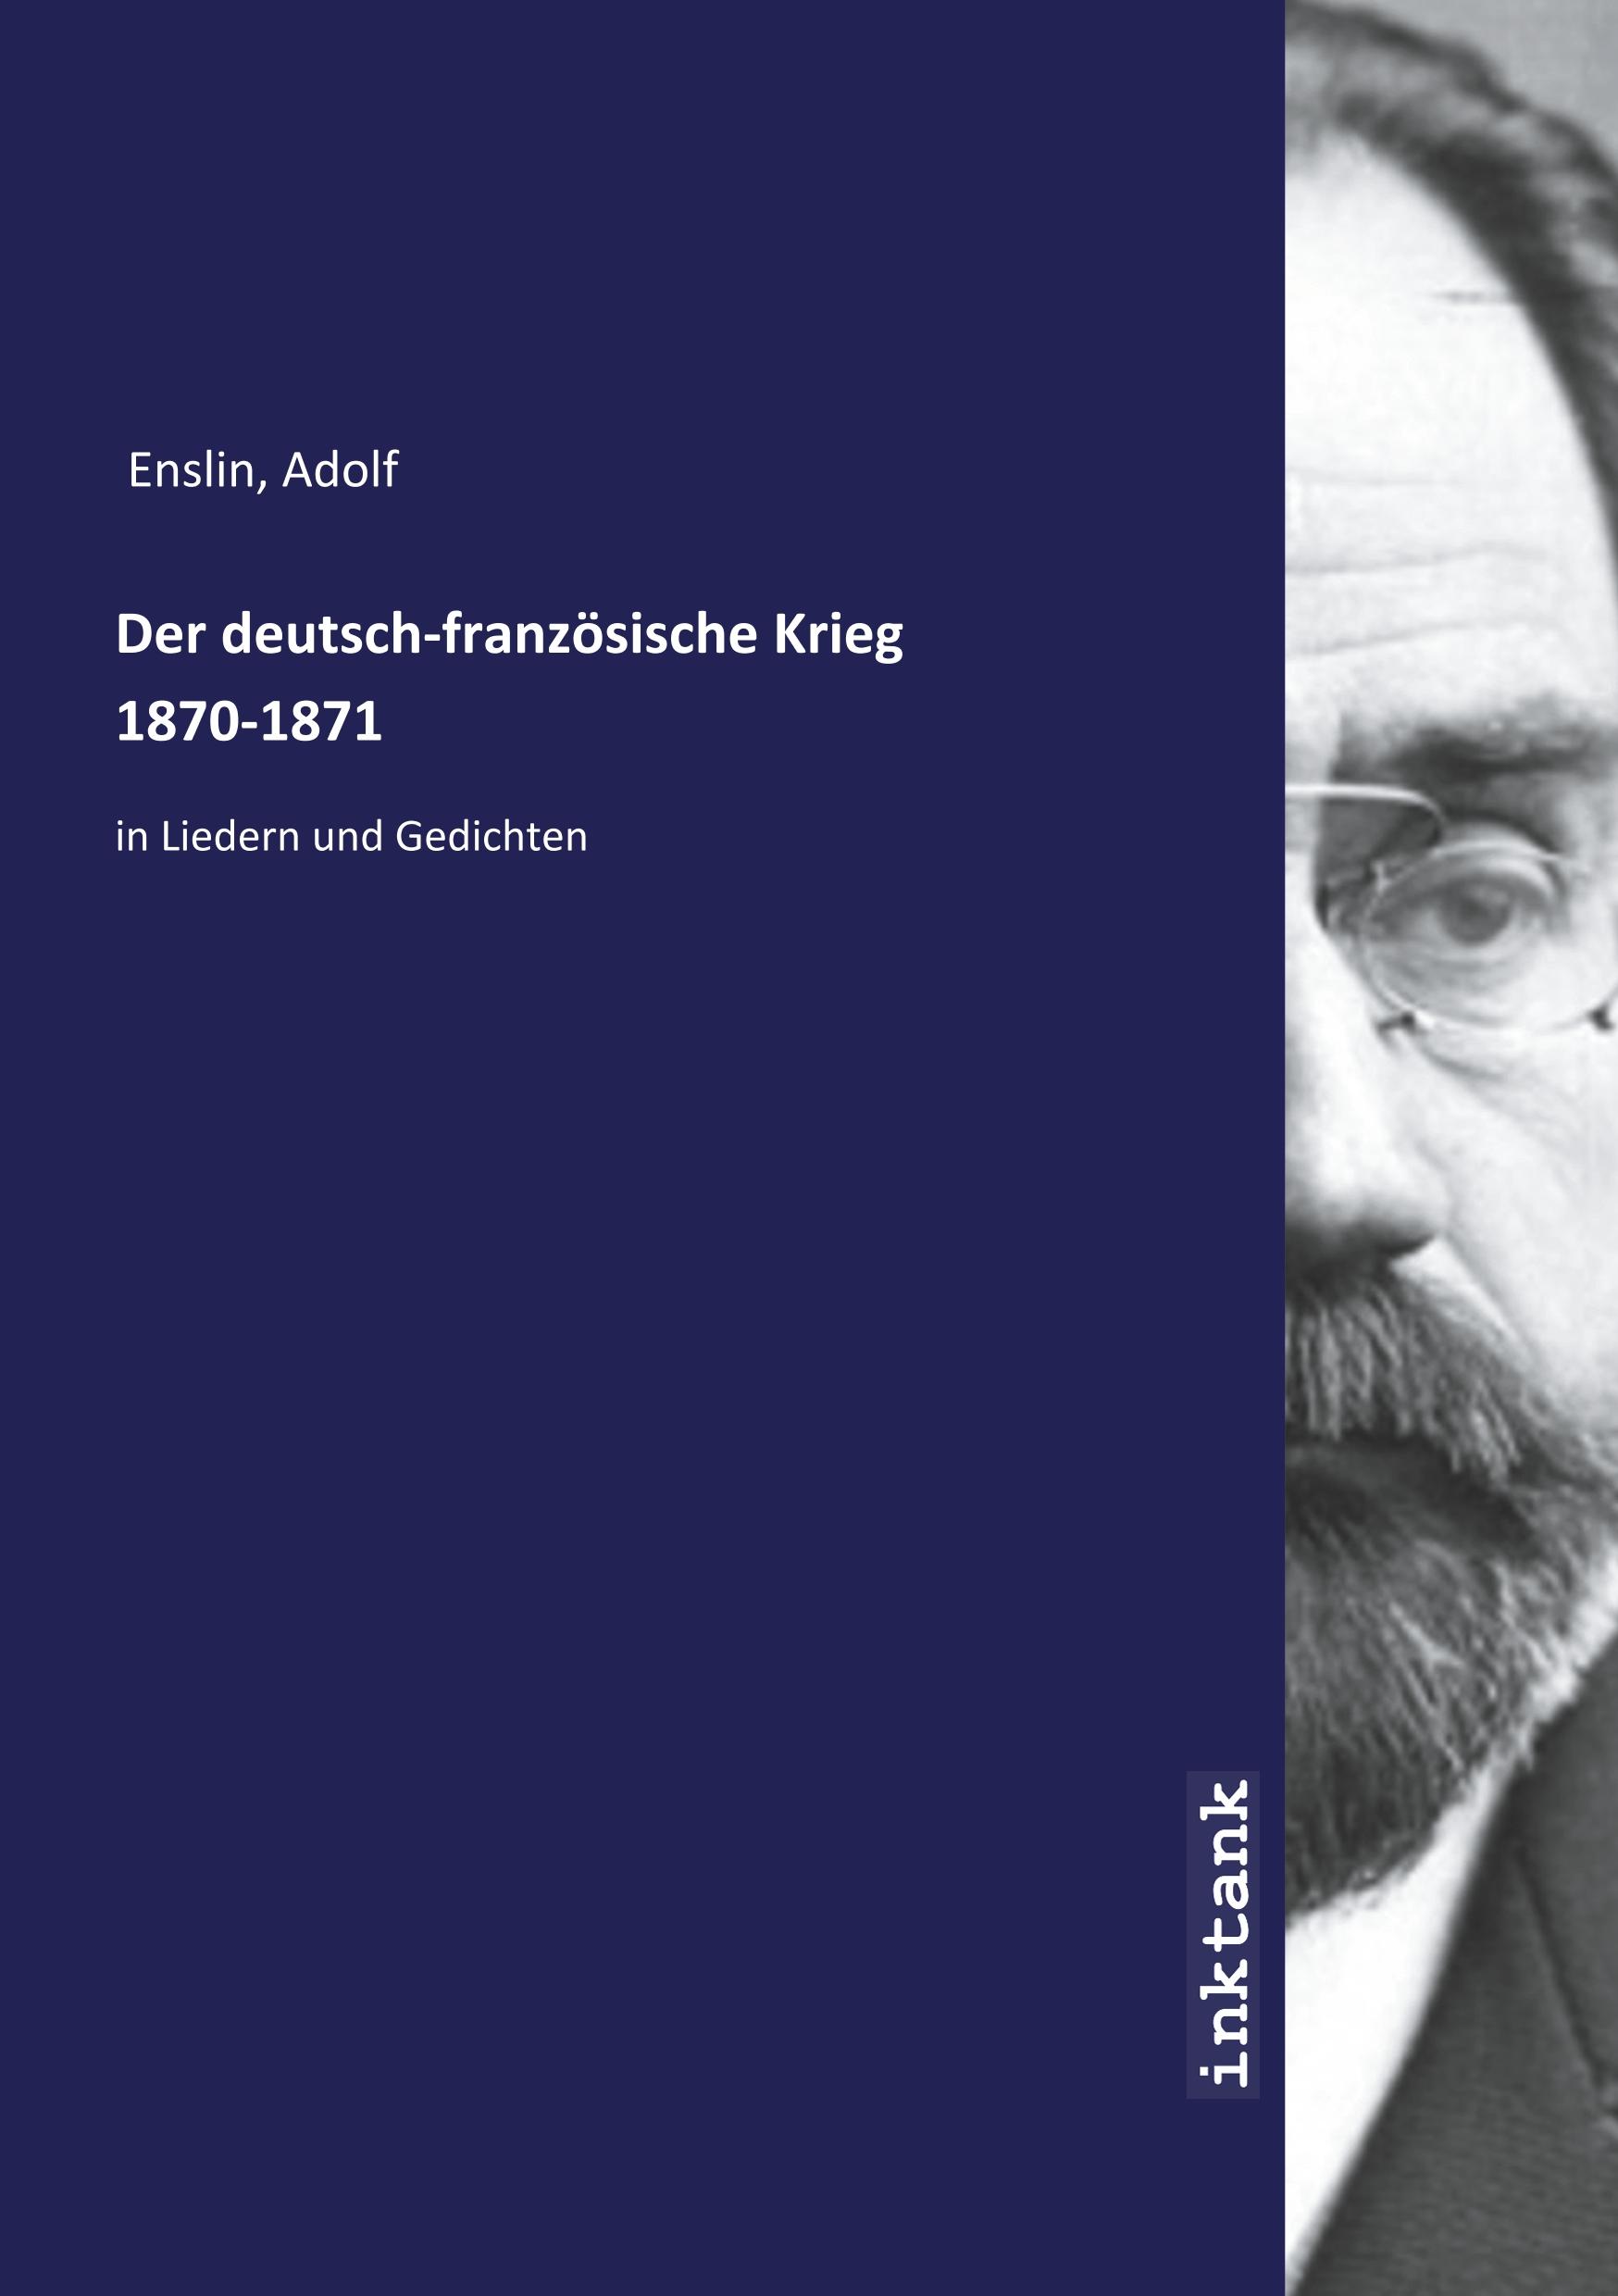 Der deutsch-franzoesische Krieg 1870-1871 - Enslin, Adolf